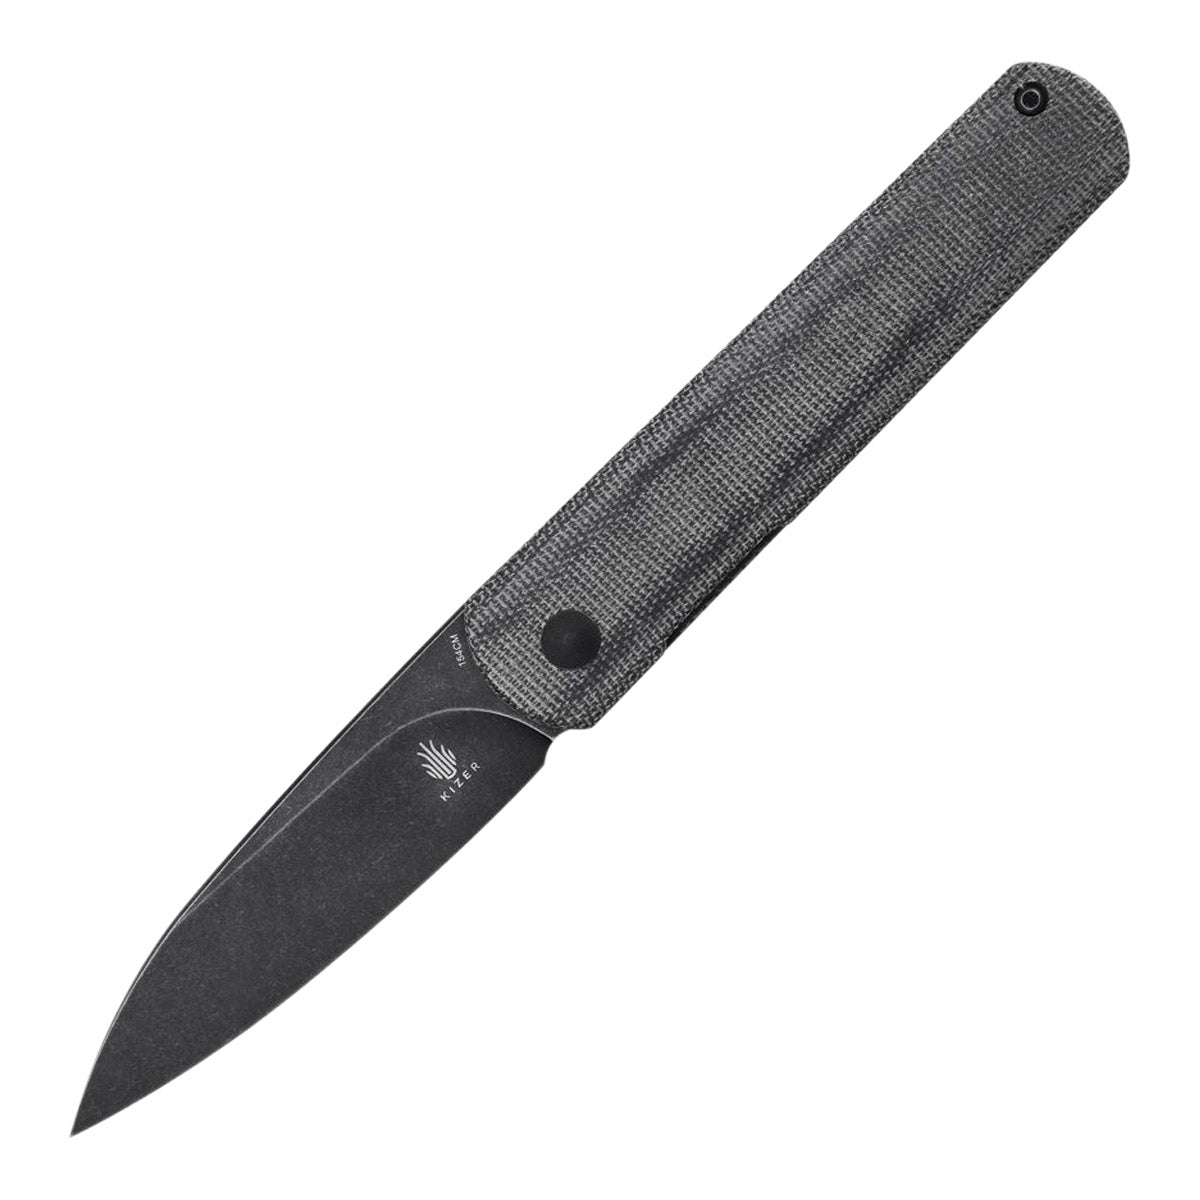 Kizer Fiest XL Linerlock Knife